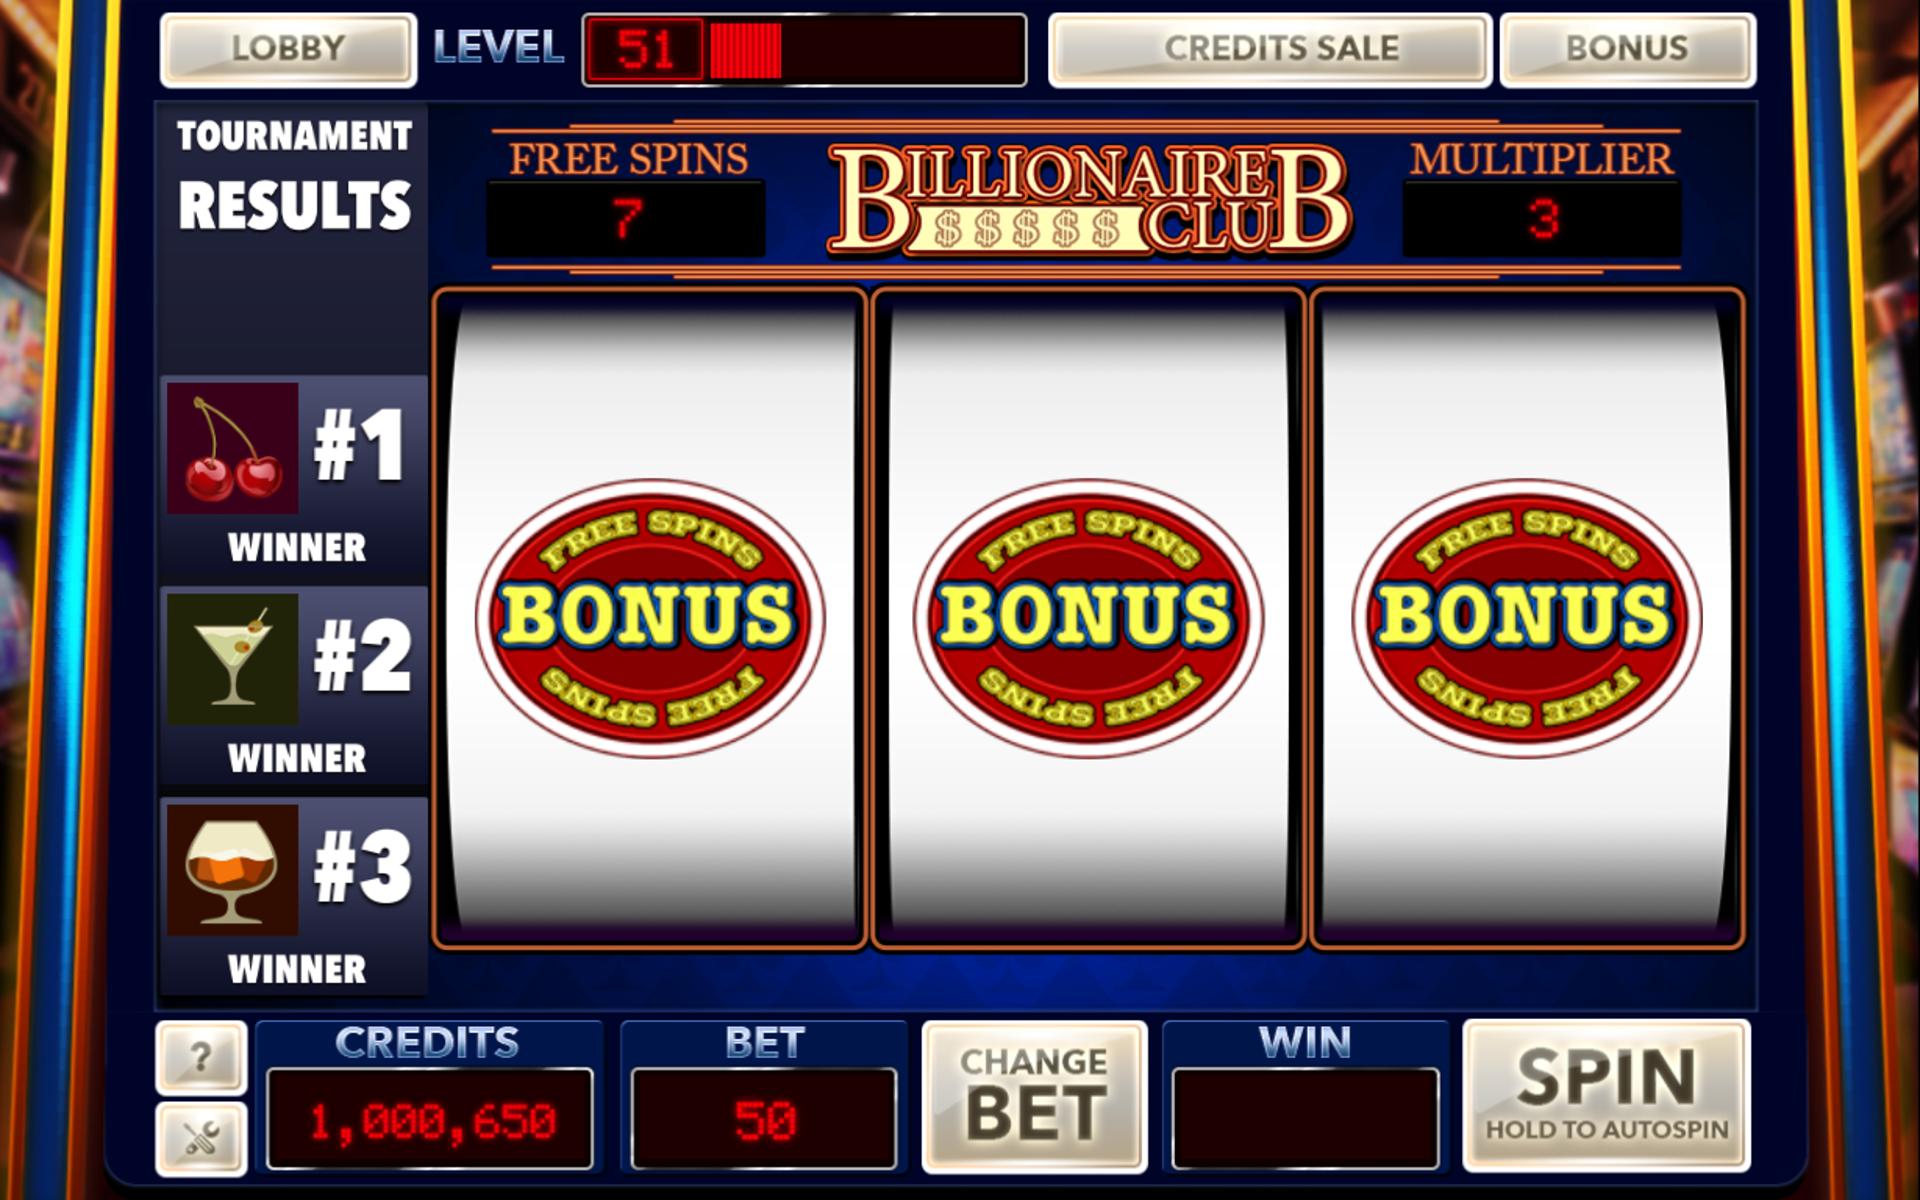 Play real casino games online казино на деньги онлайн официальный сайт